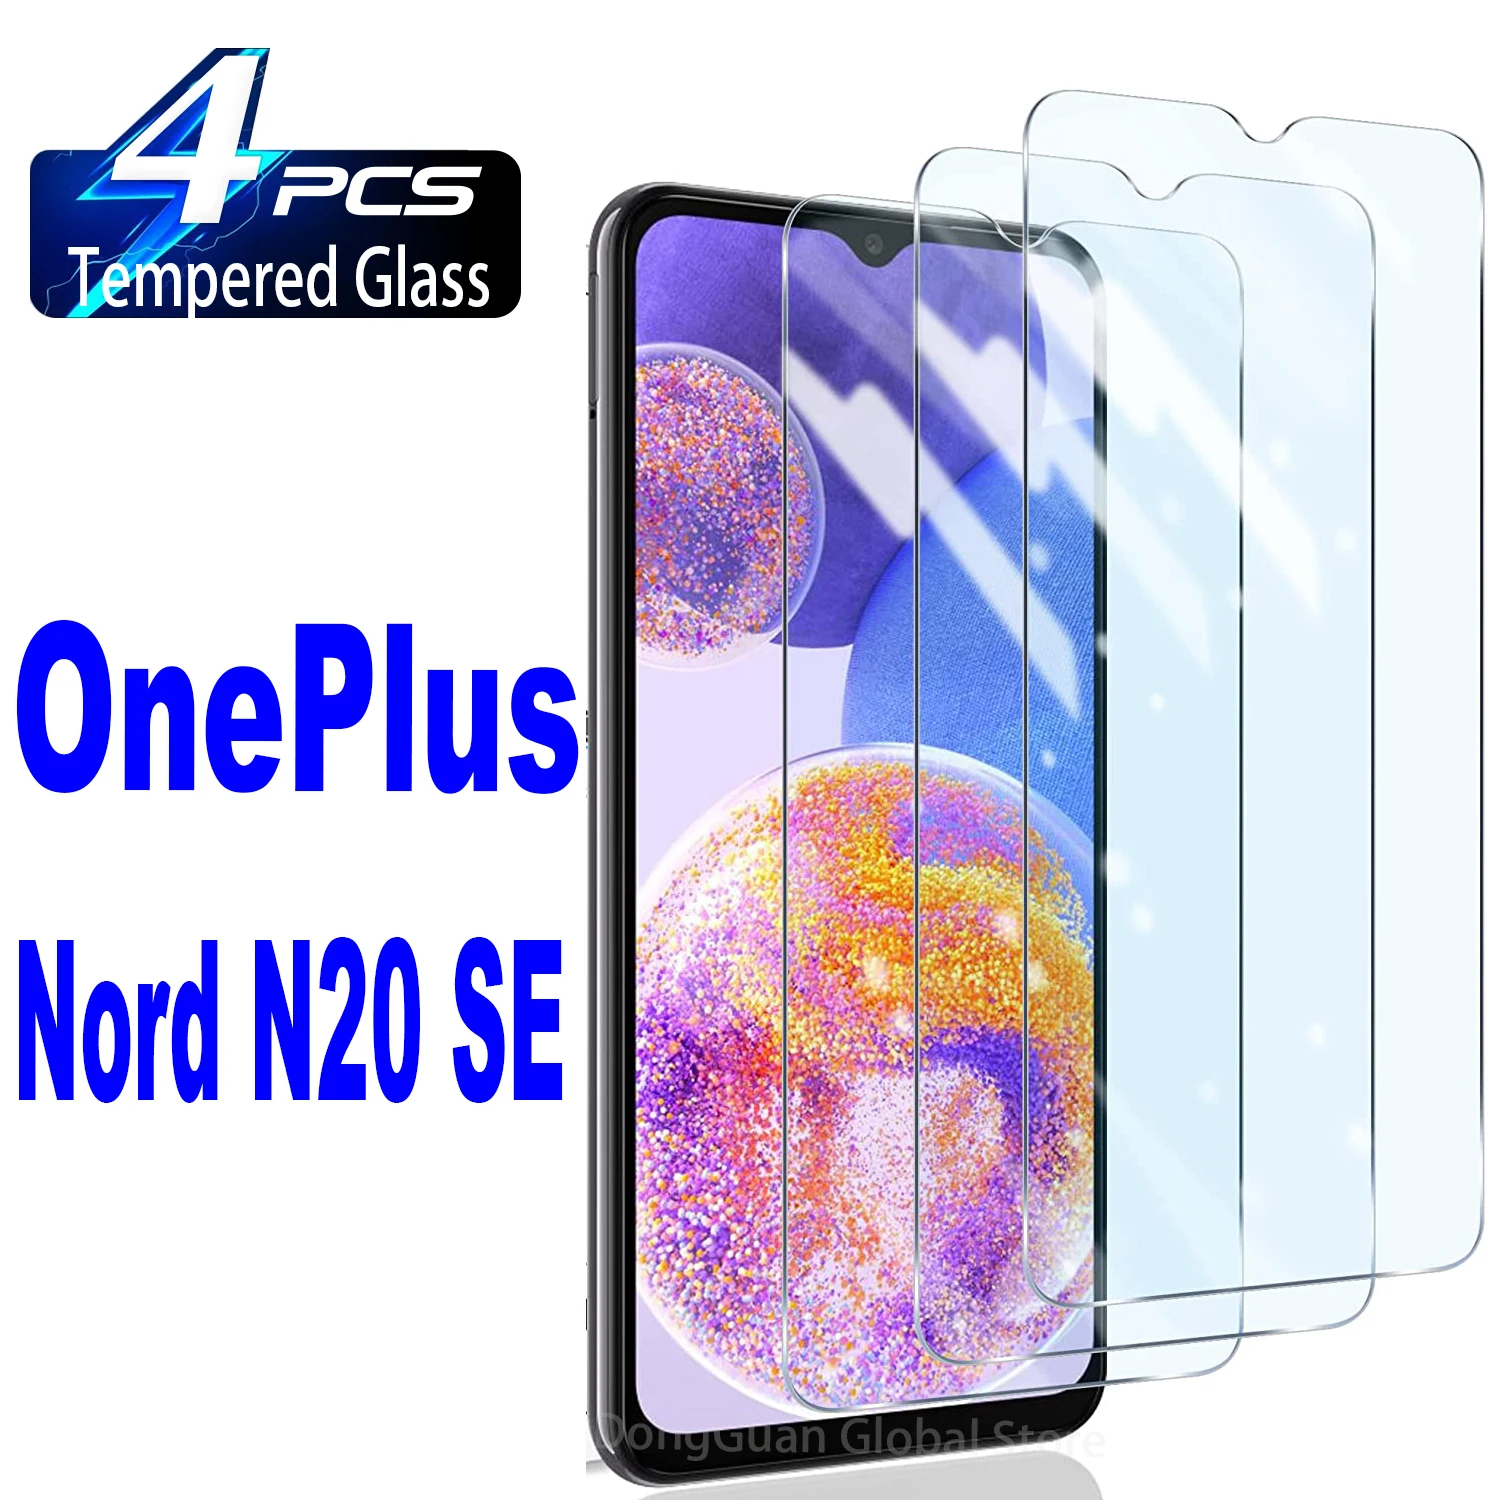 

2/4 шт. высококачественное алюминиевое закаленное стекло для OnePlus Nord N20 SE, защитная стеклянная пленка для экрана